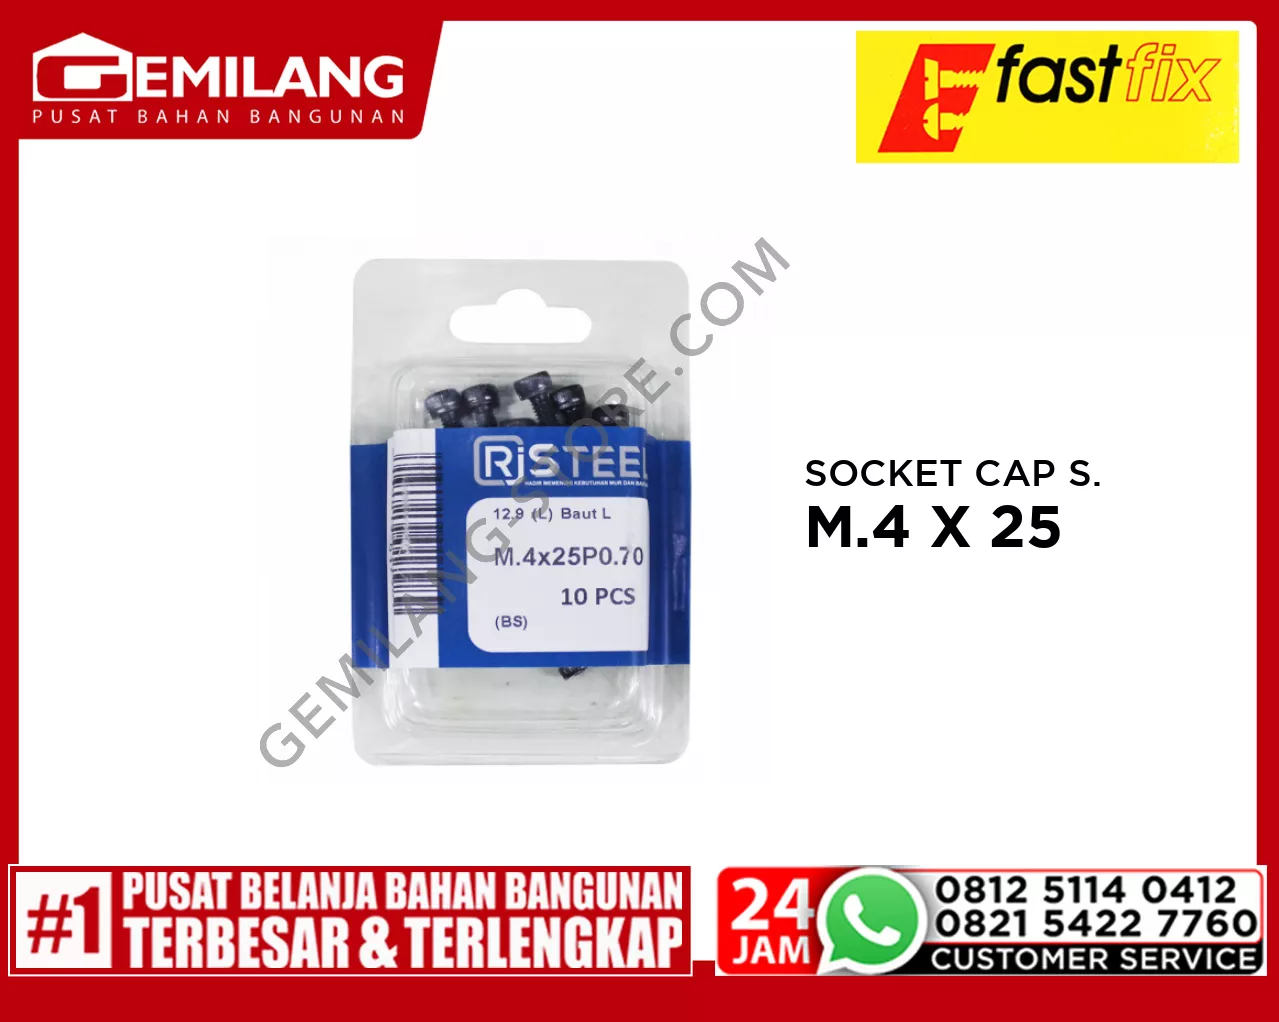 FAST FIX SOCKET CAP SCREW M.4 X 25 10pc/PAK